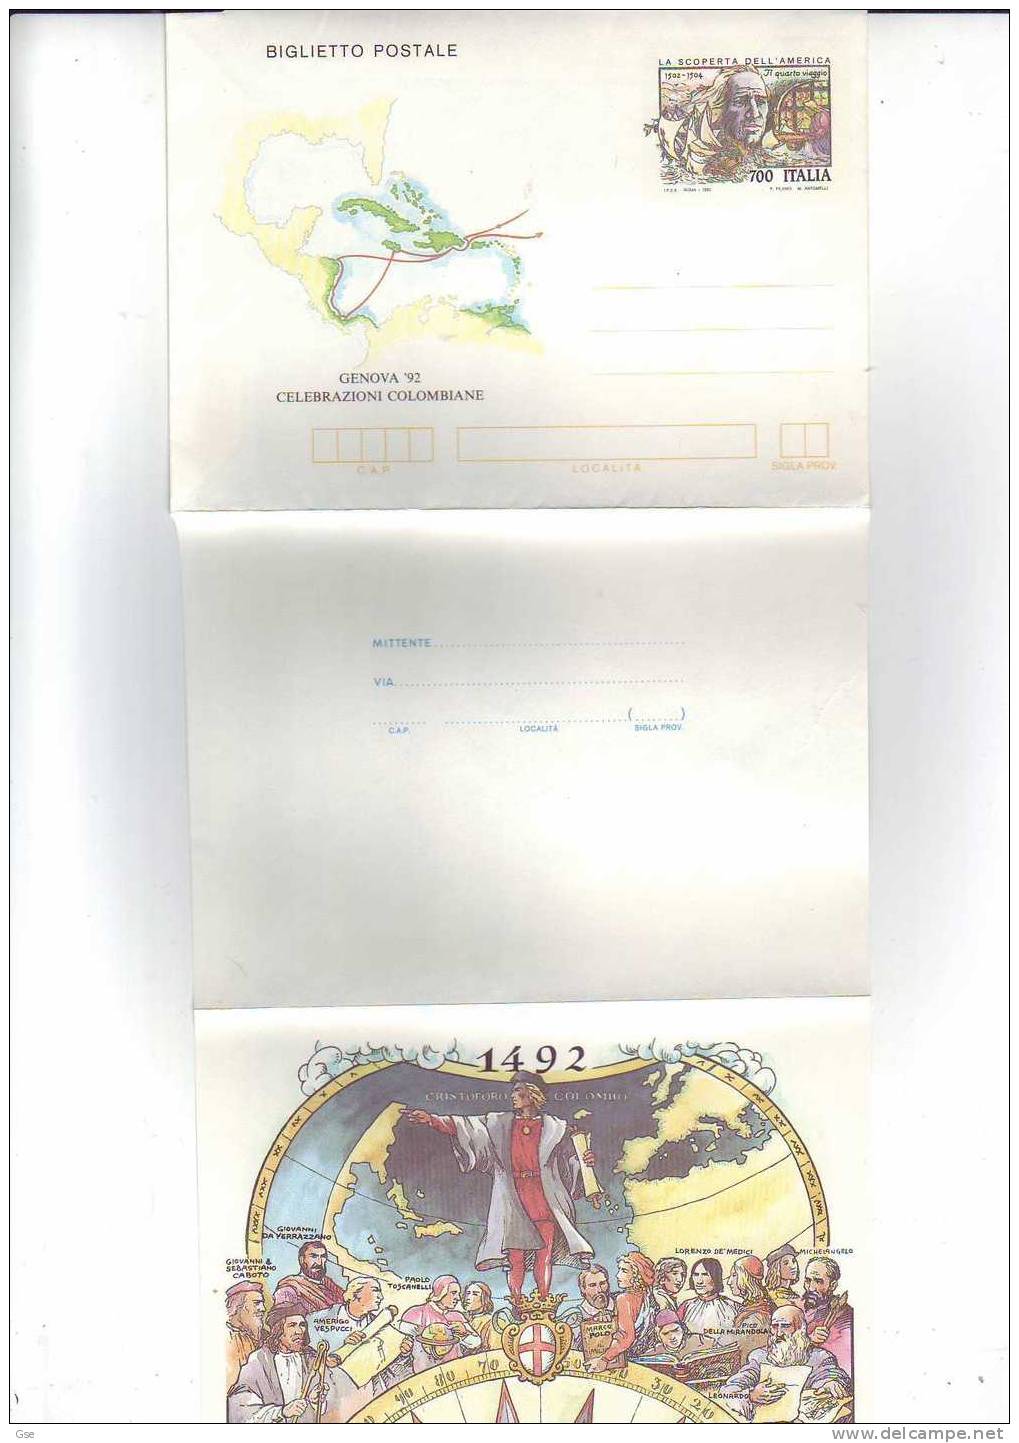 ITALIA 1992 - Biglietto Postale Nuovo - Cristoforo Colombo - Christopher Columbus